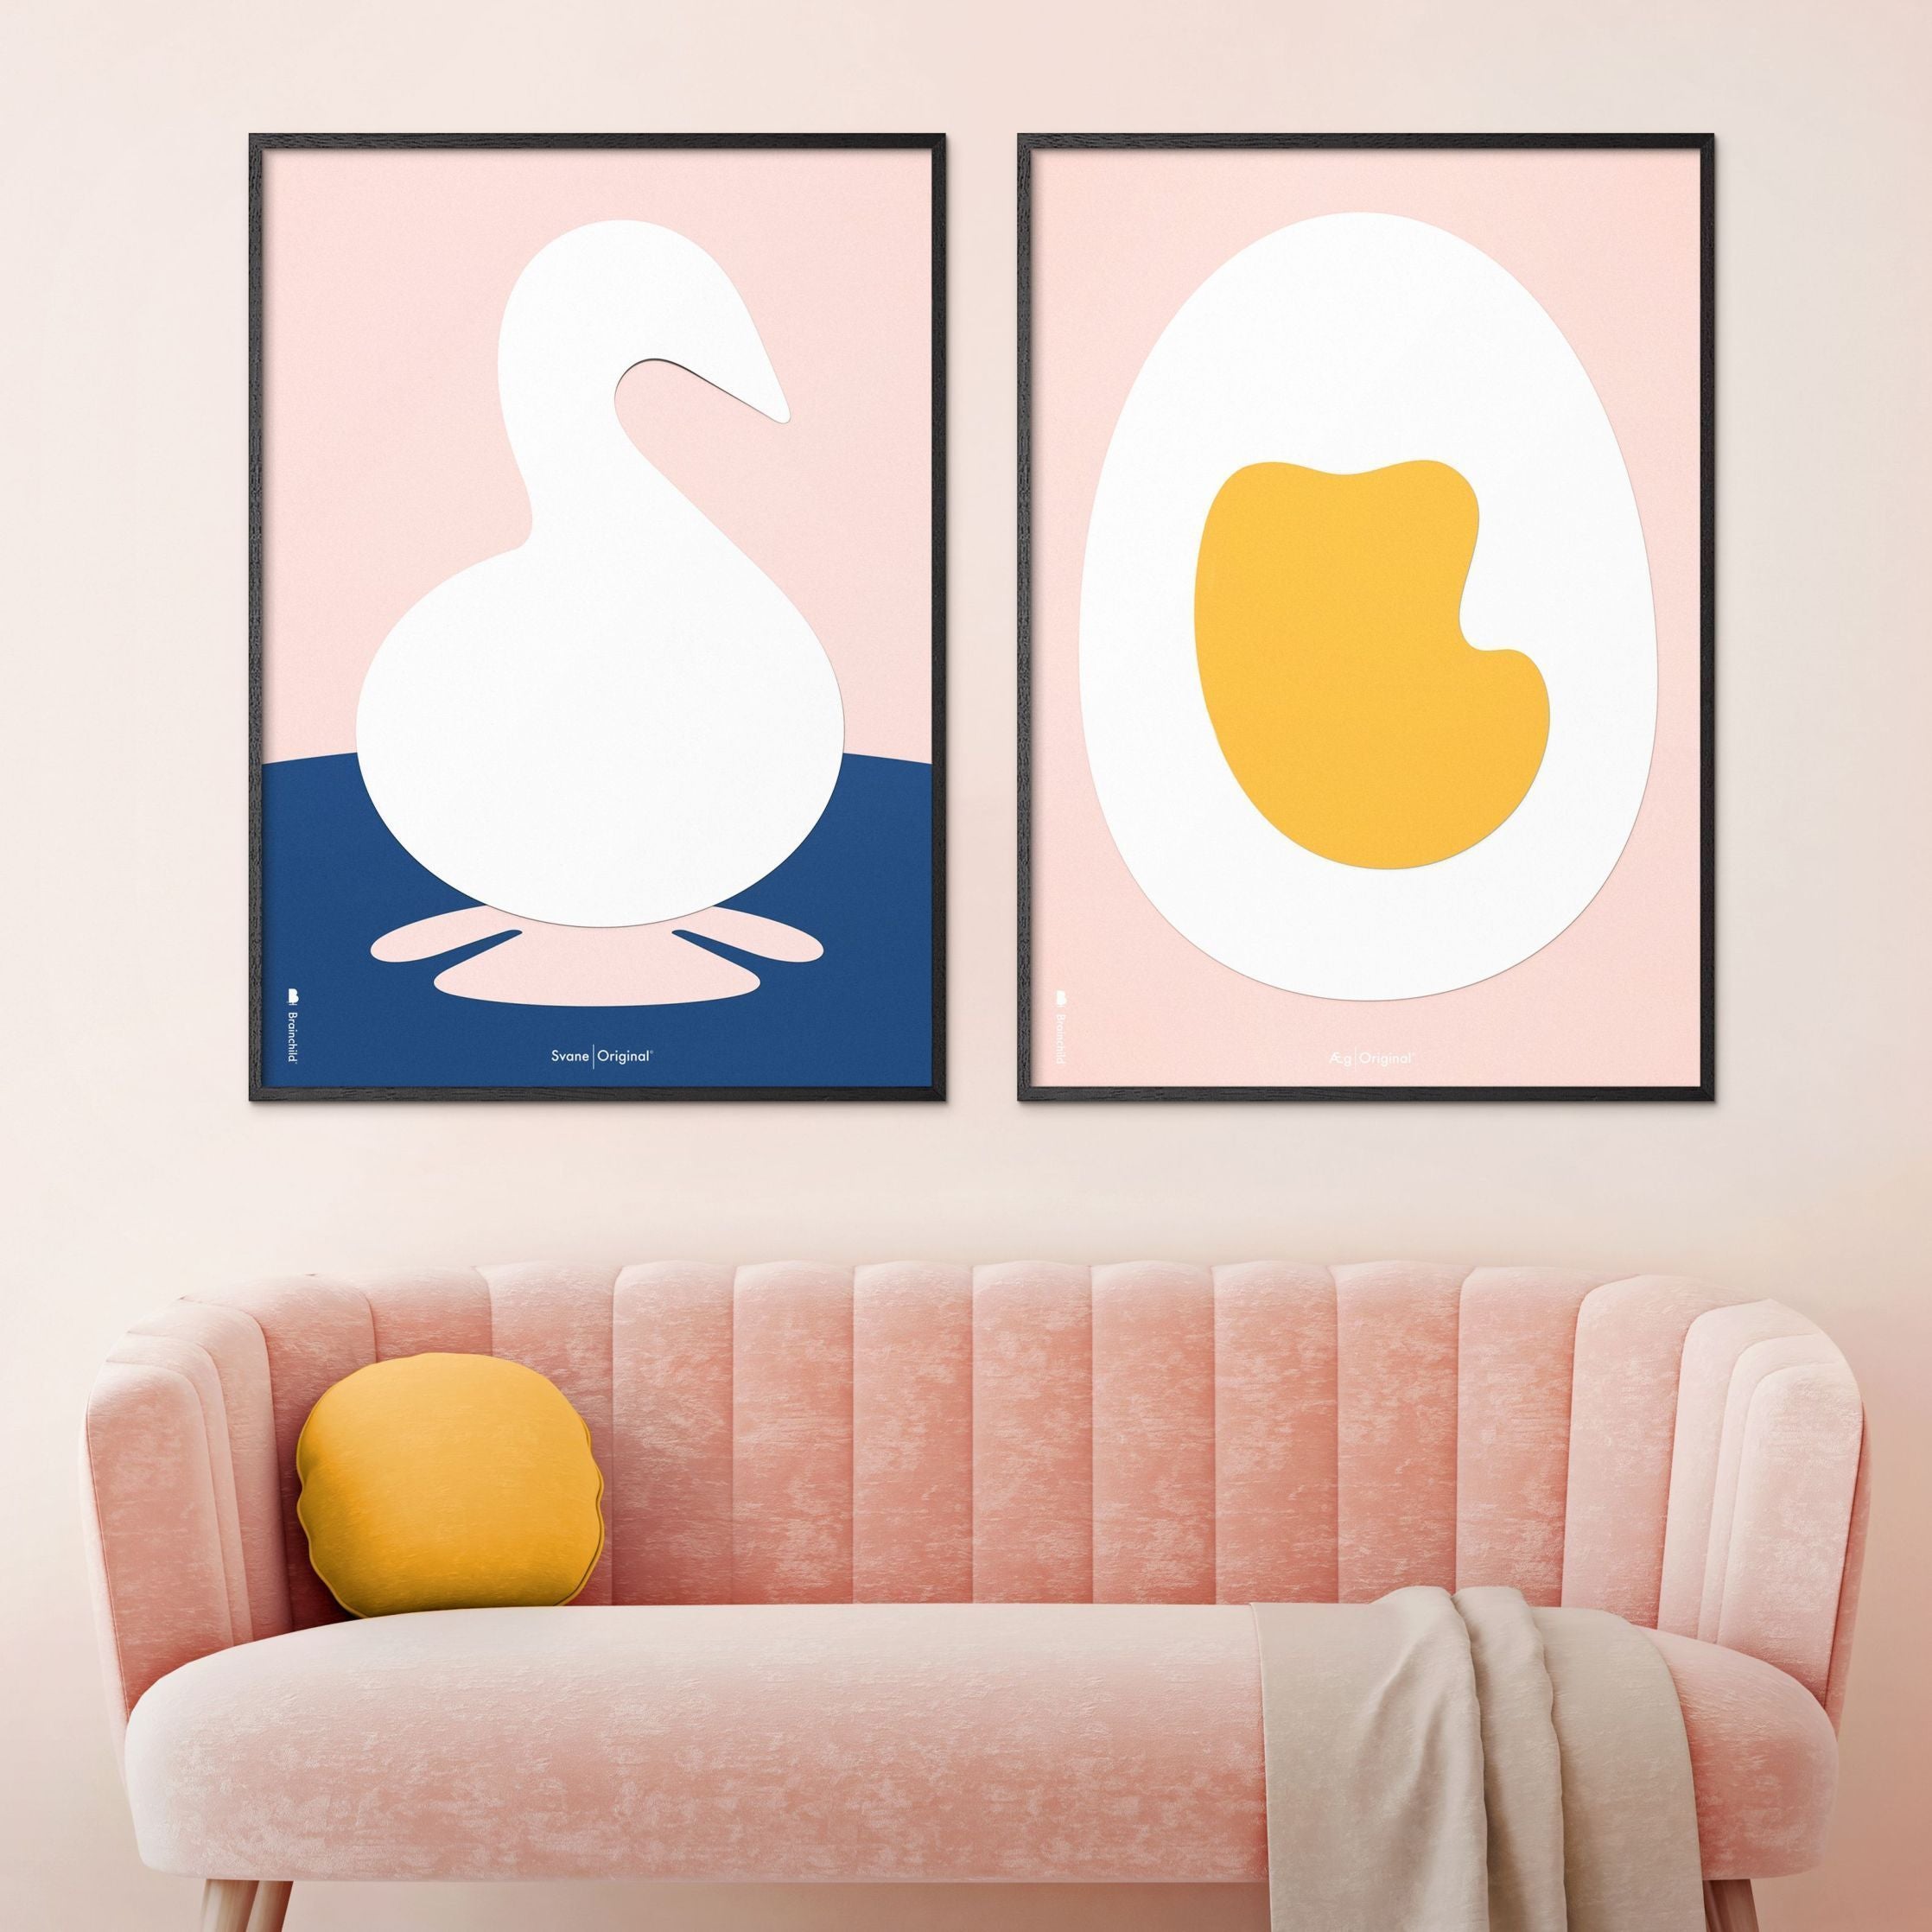 Plakát s labuťovou sponou s labuťovou sponou, mosazný barevný rám 70 x100 cm, růžové pozadí